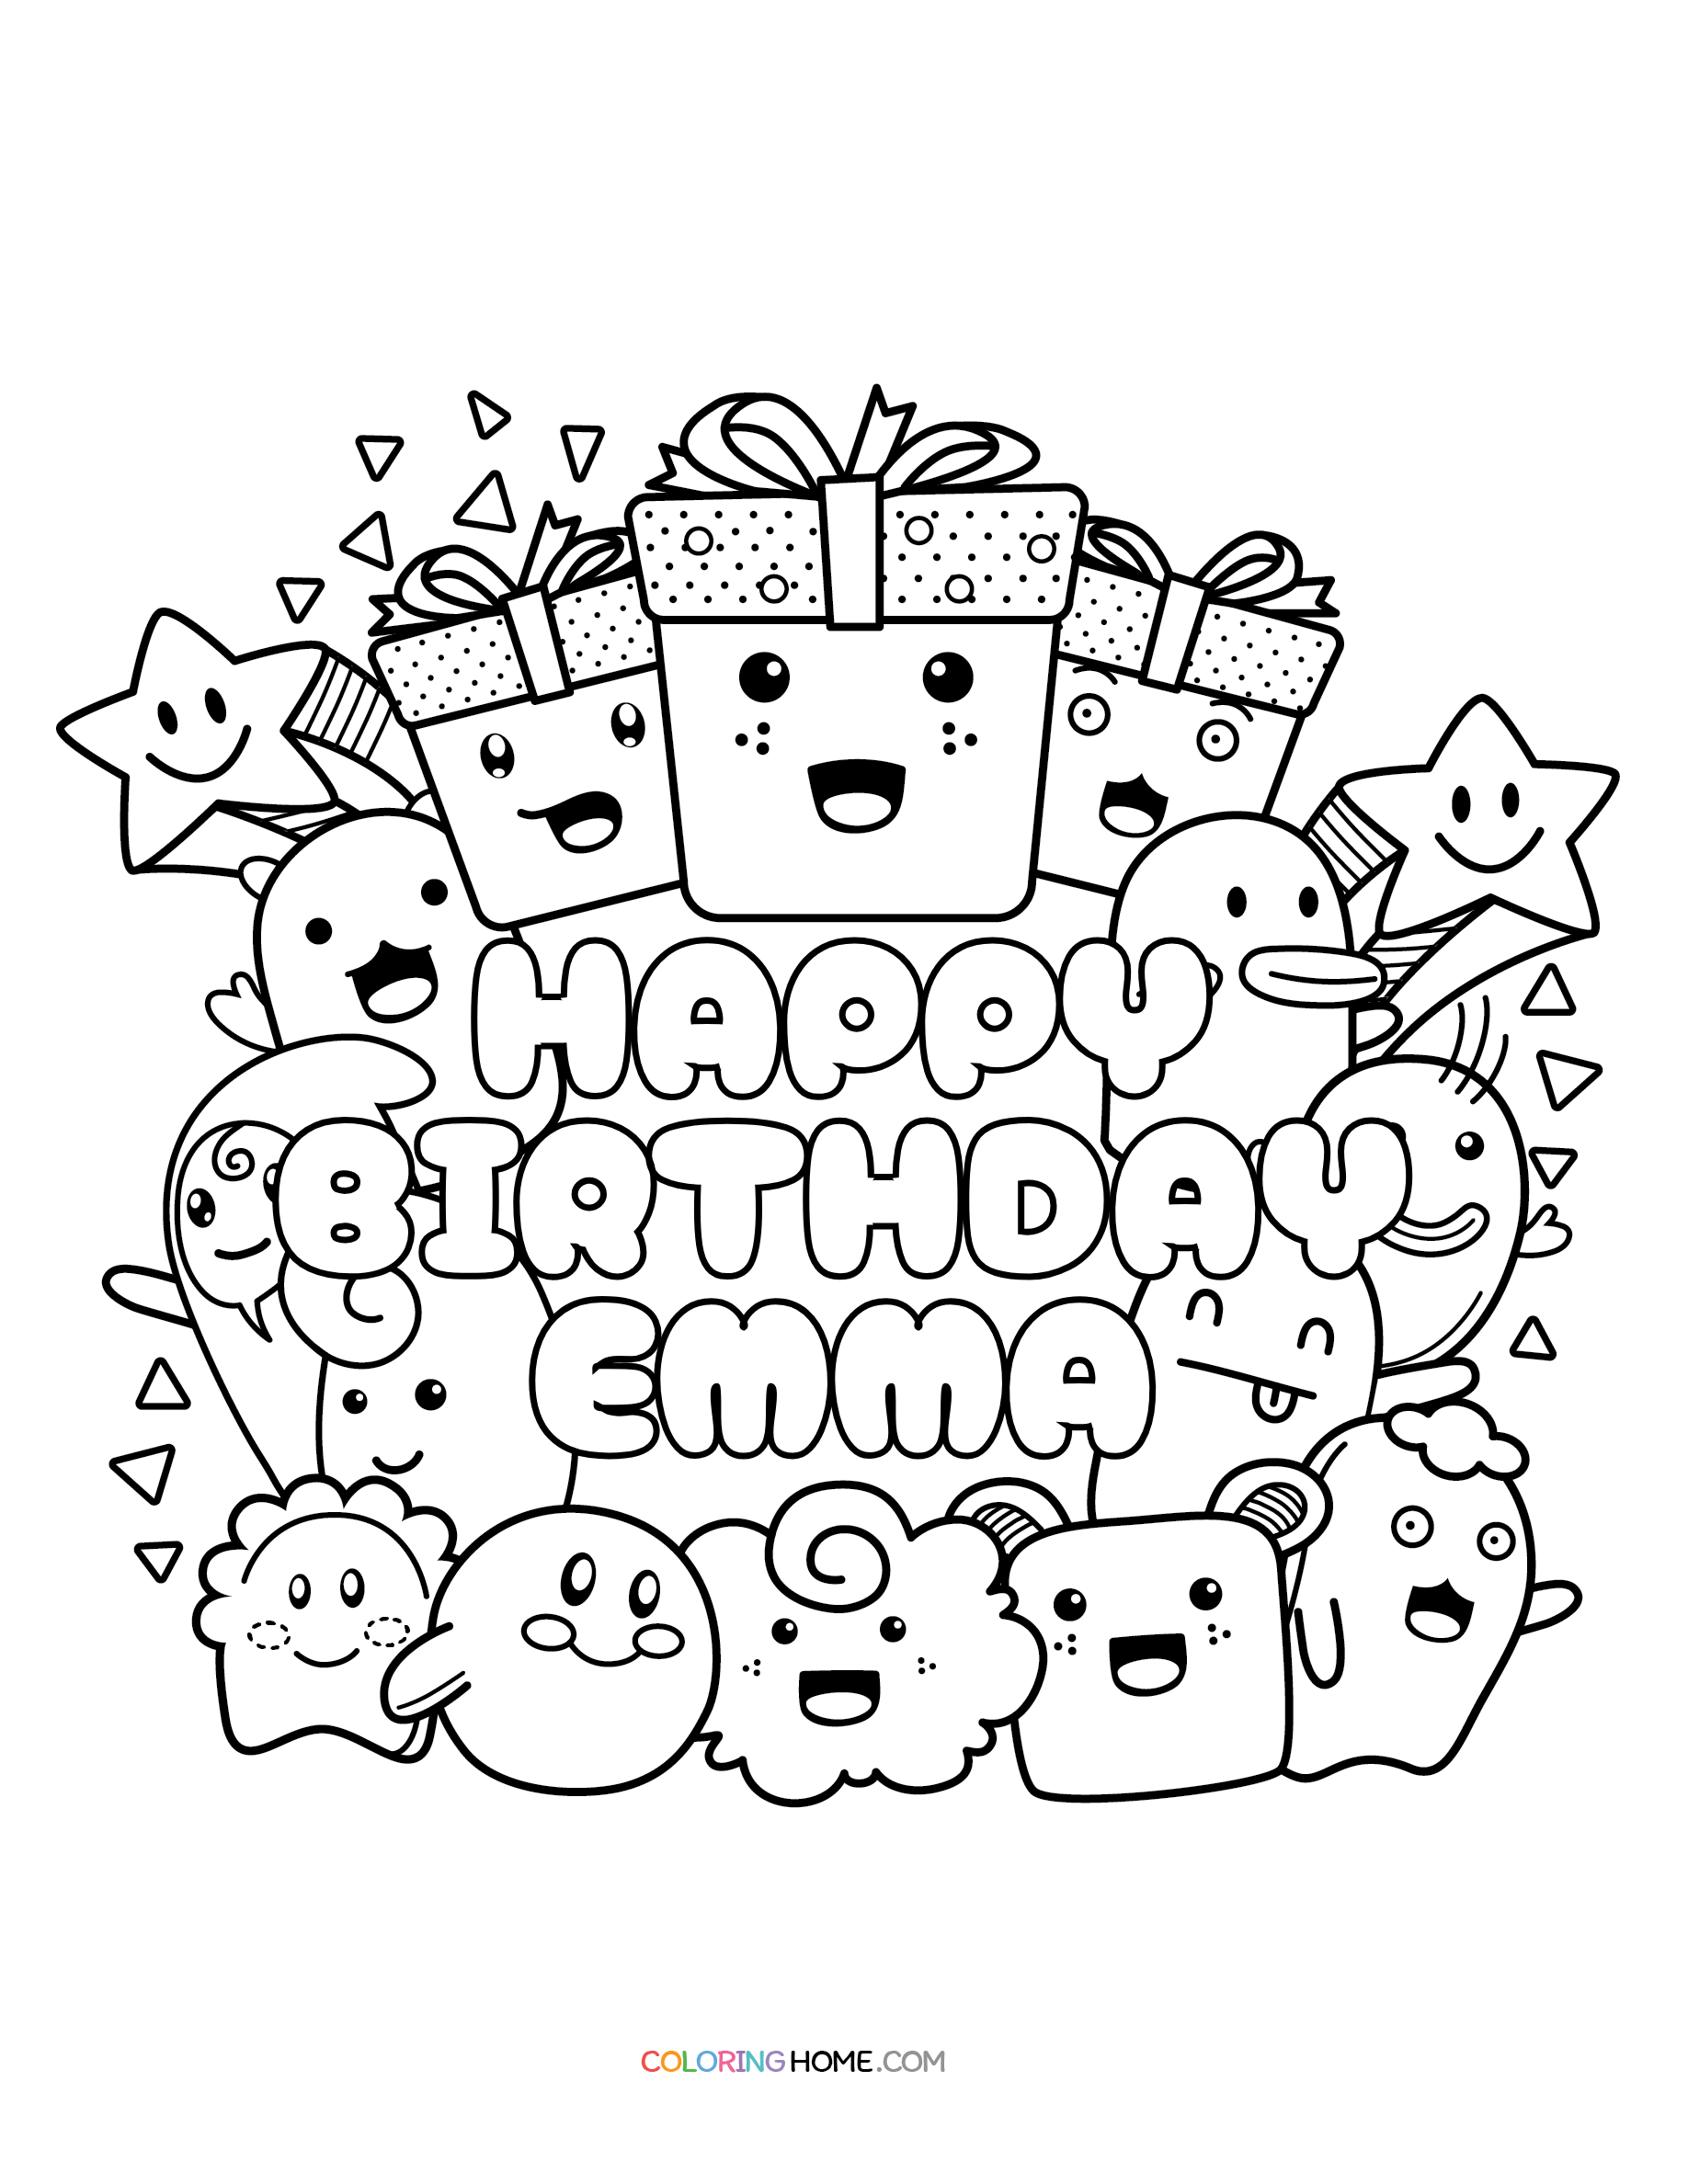 Happy Birthday Emma coloring page